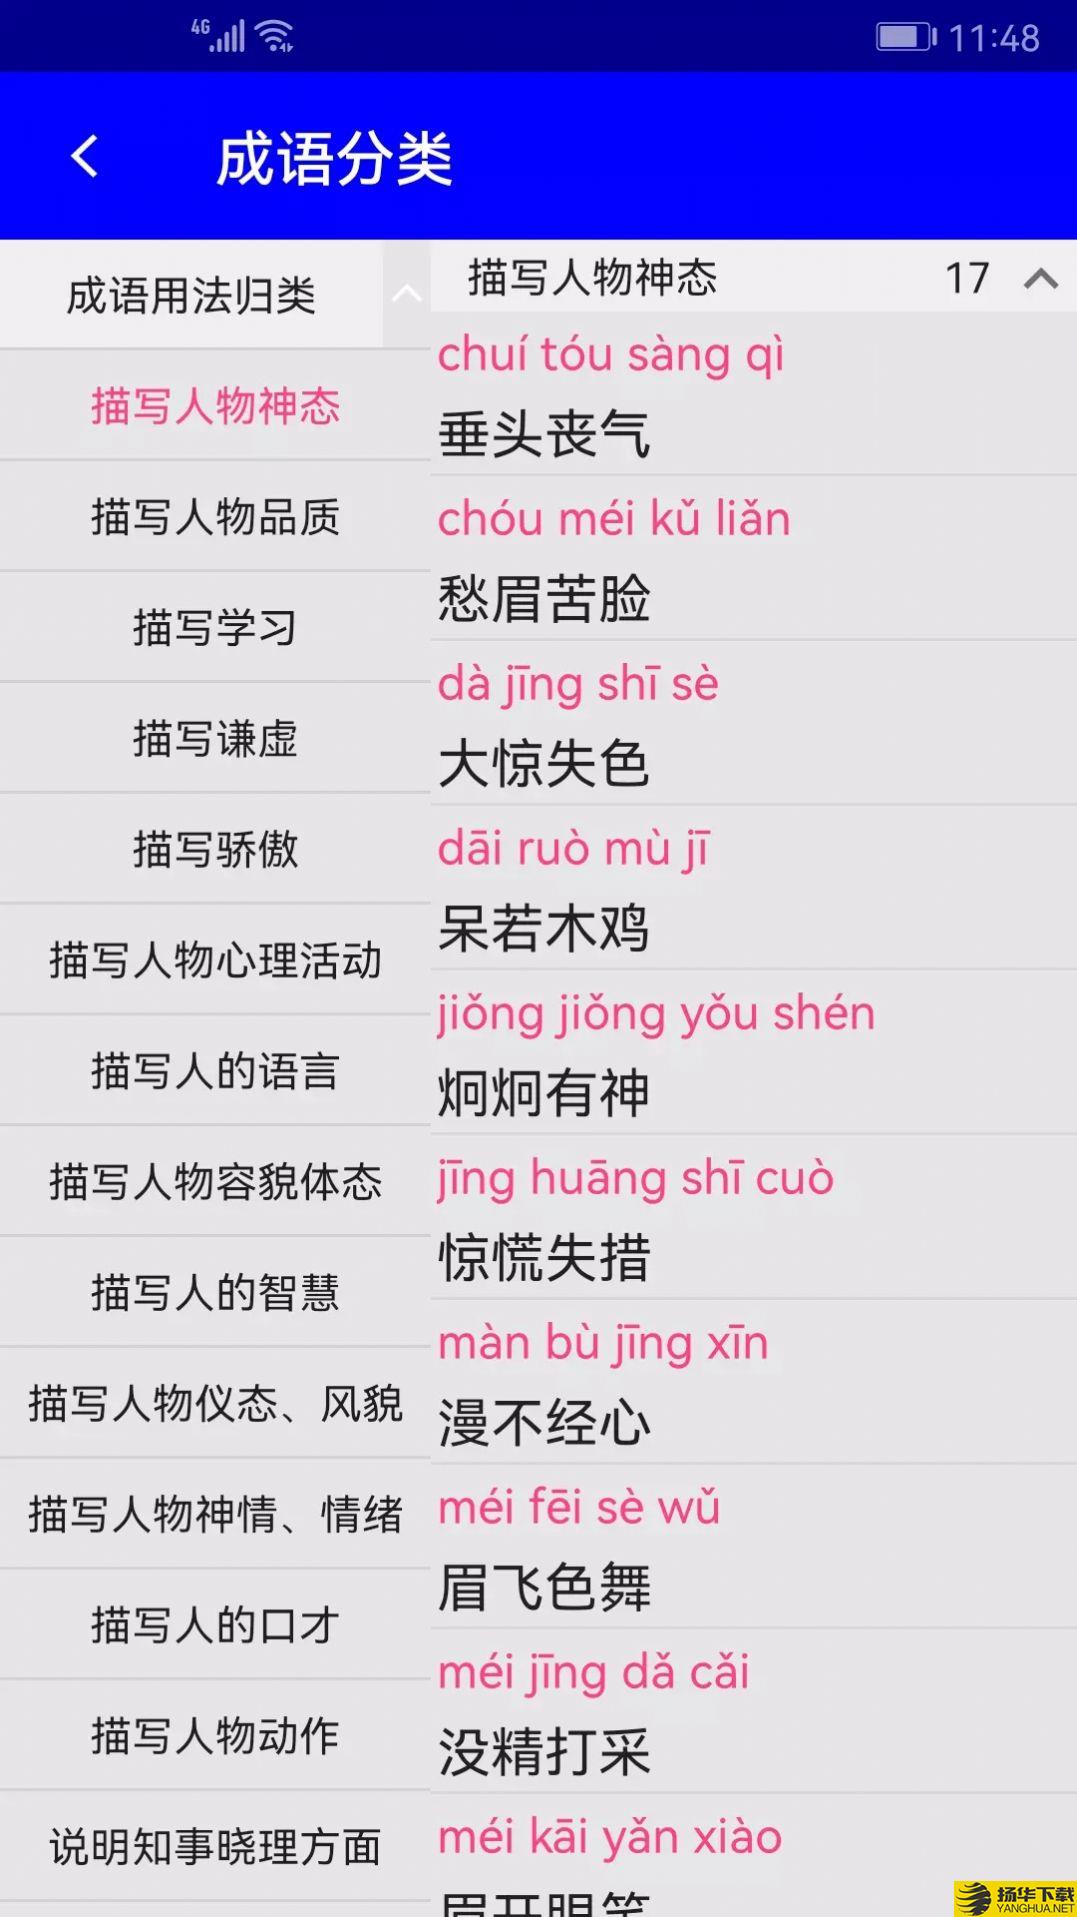 实用汉语成语词典app下载_实用汉语成语词典app最新版免费下载